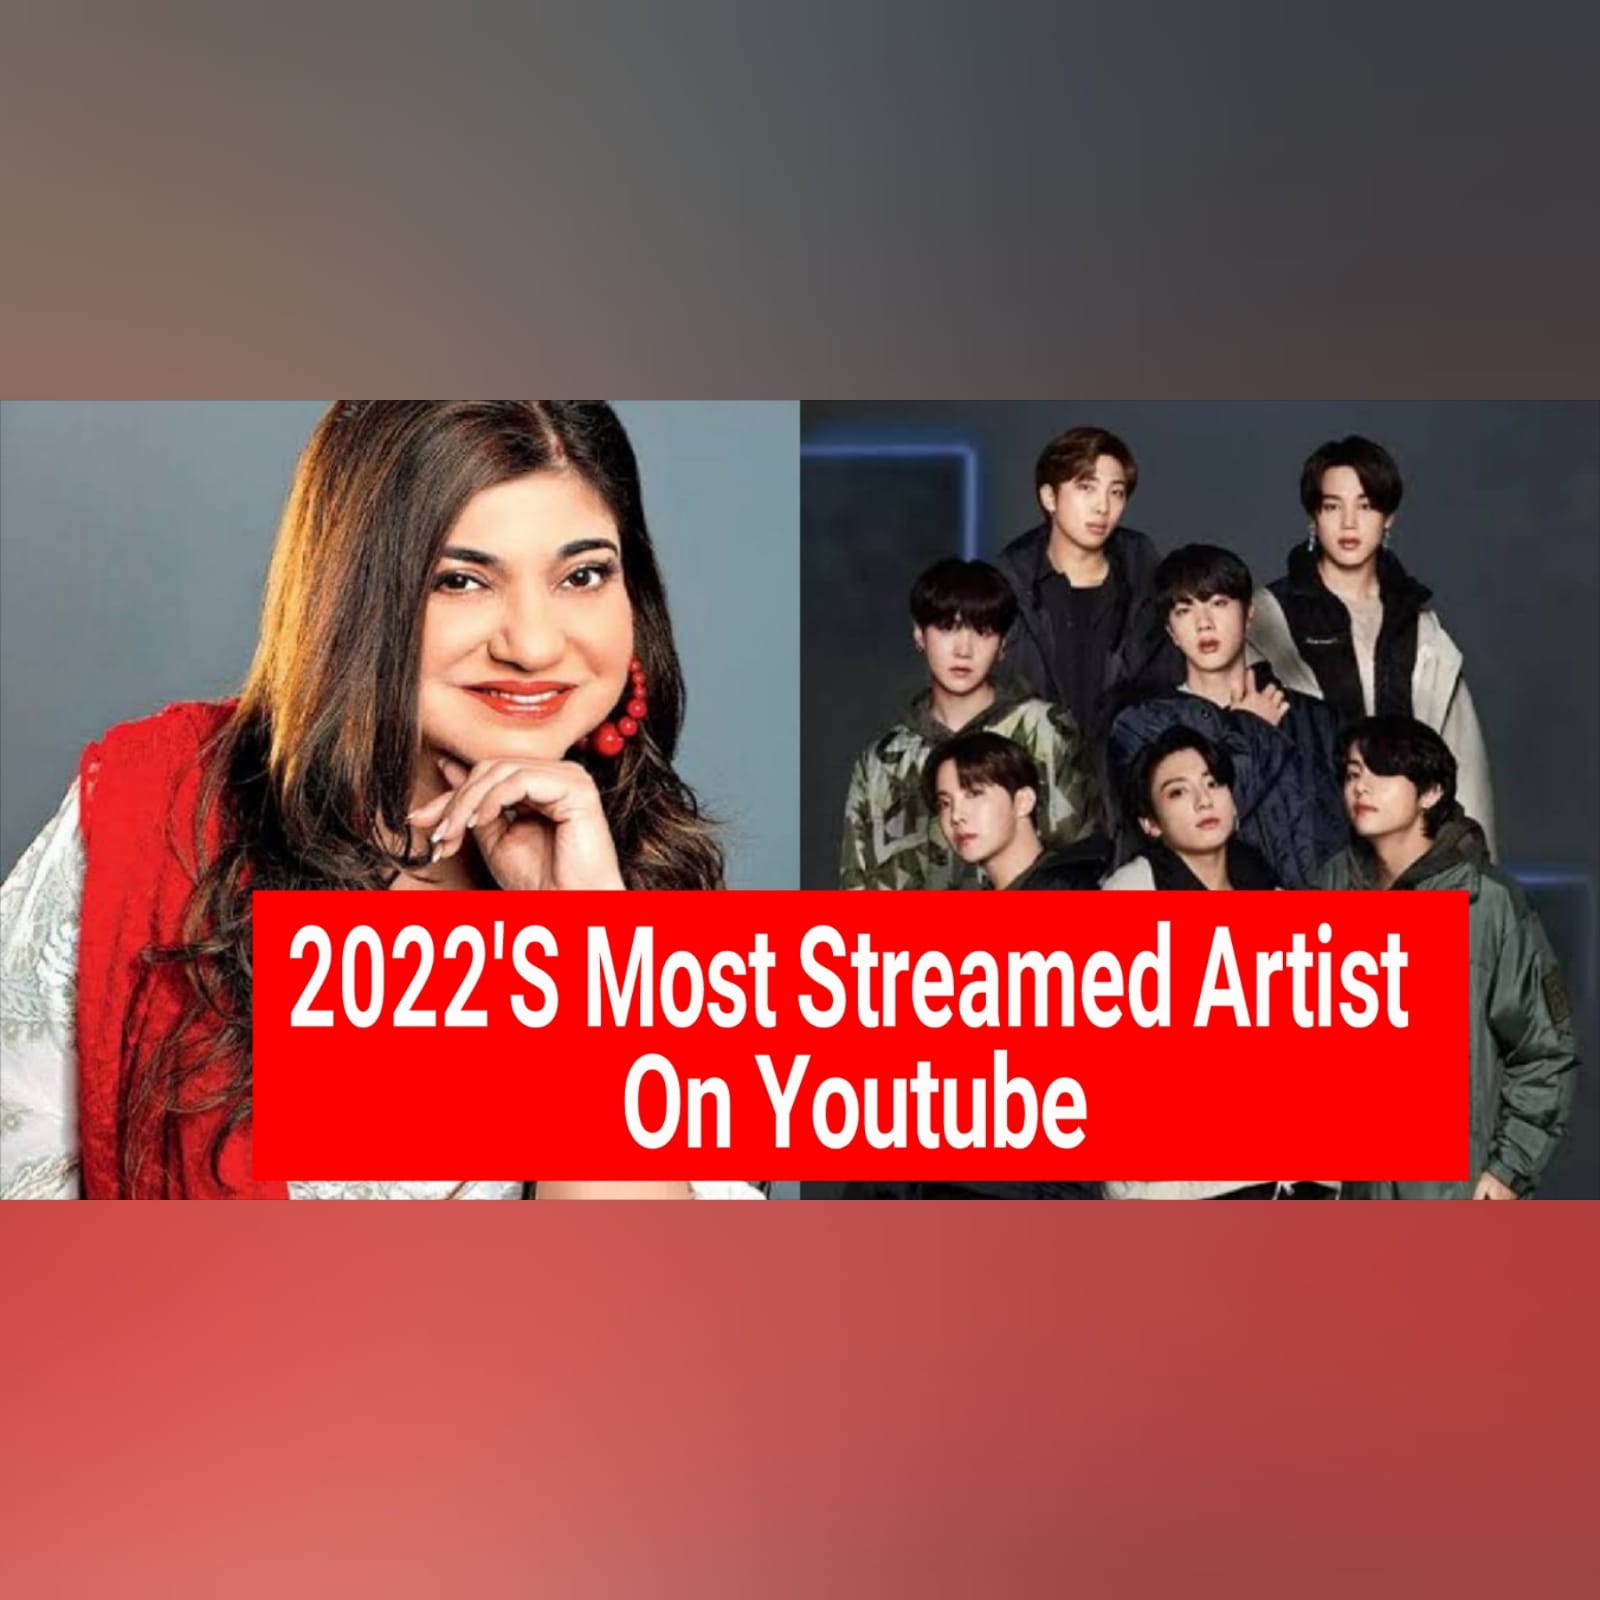 Alka Yagnik Is 2022’s Most Streamed Artist On Youtube